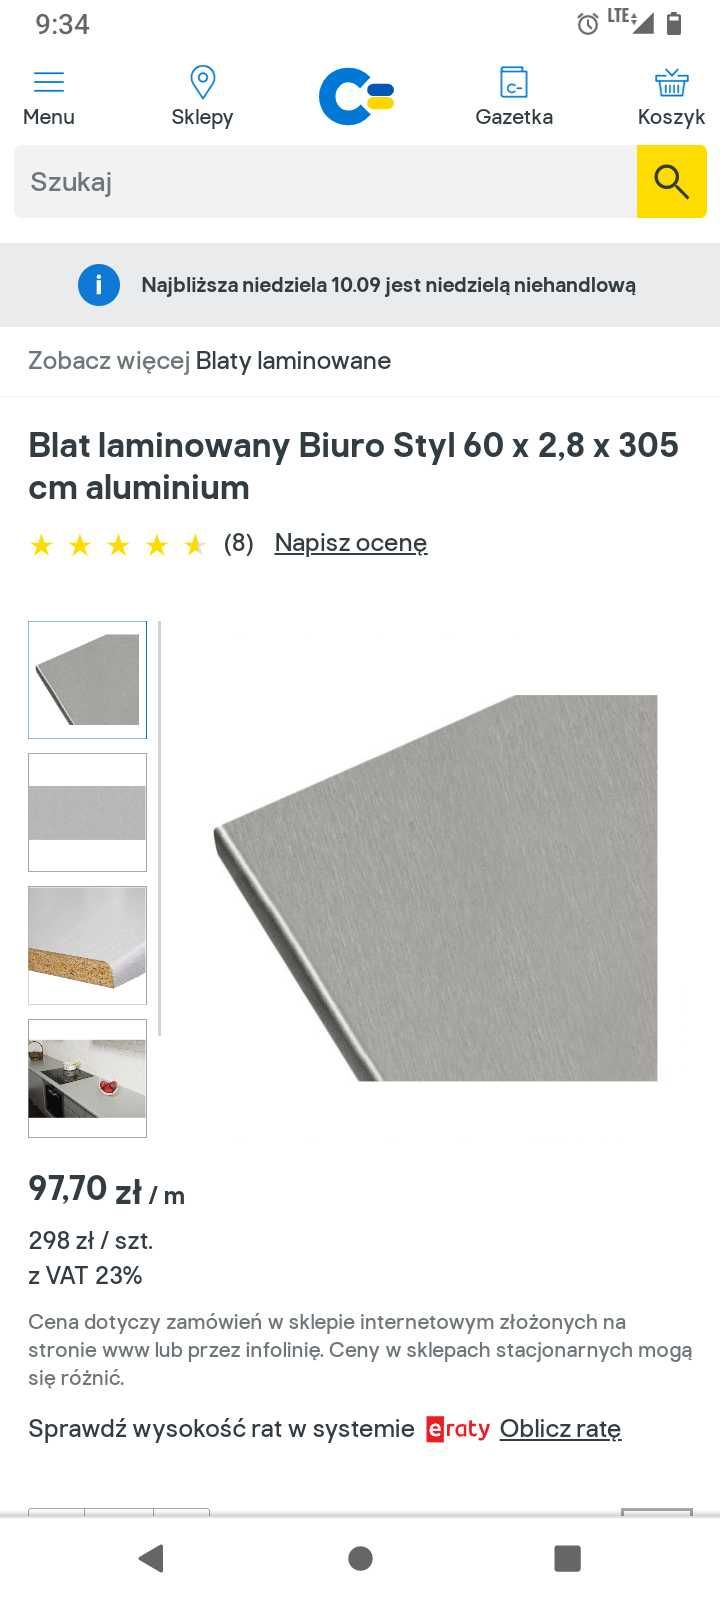 Blat kuchenny biuro Styl kolor aluminium